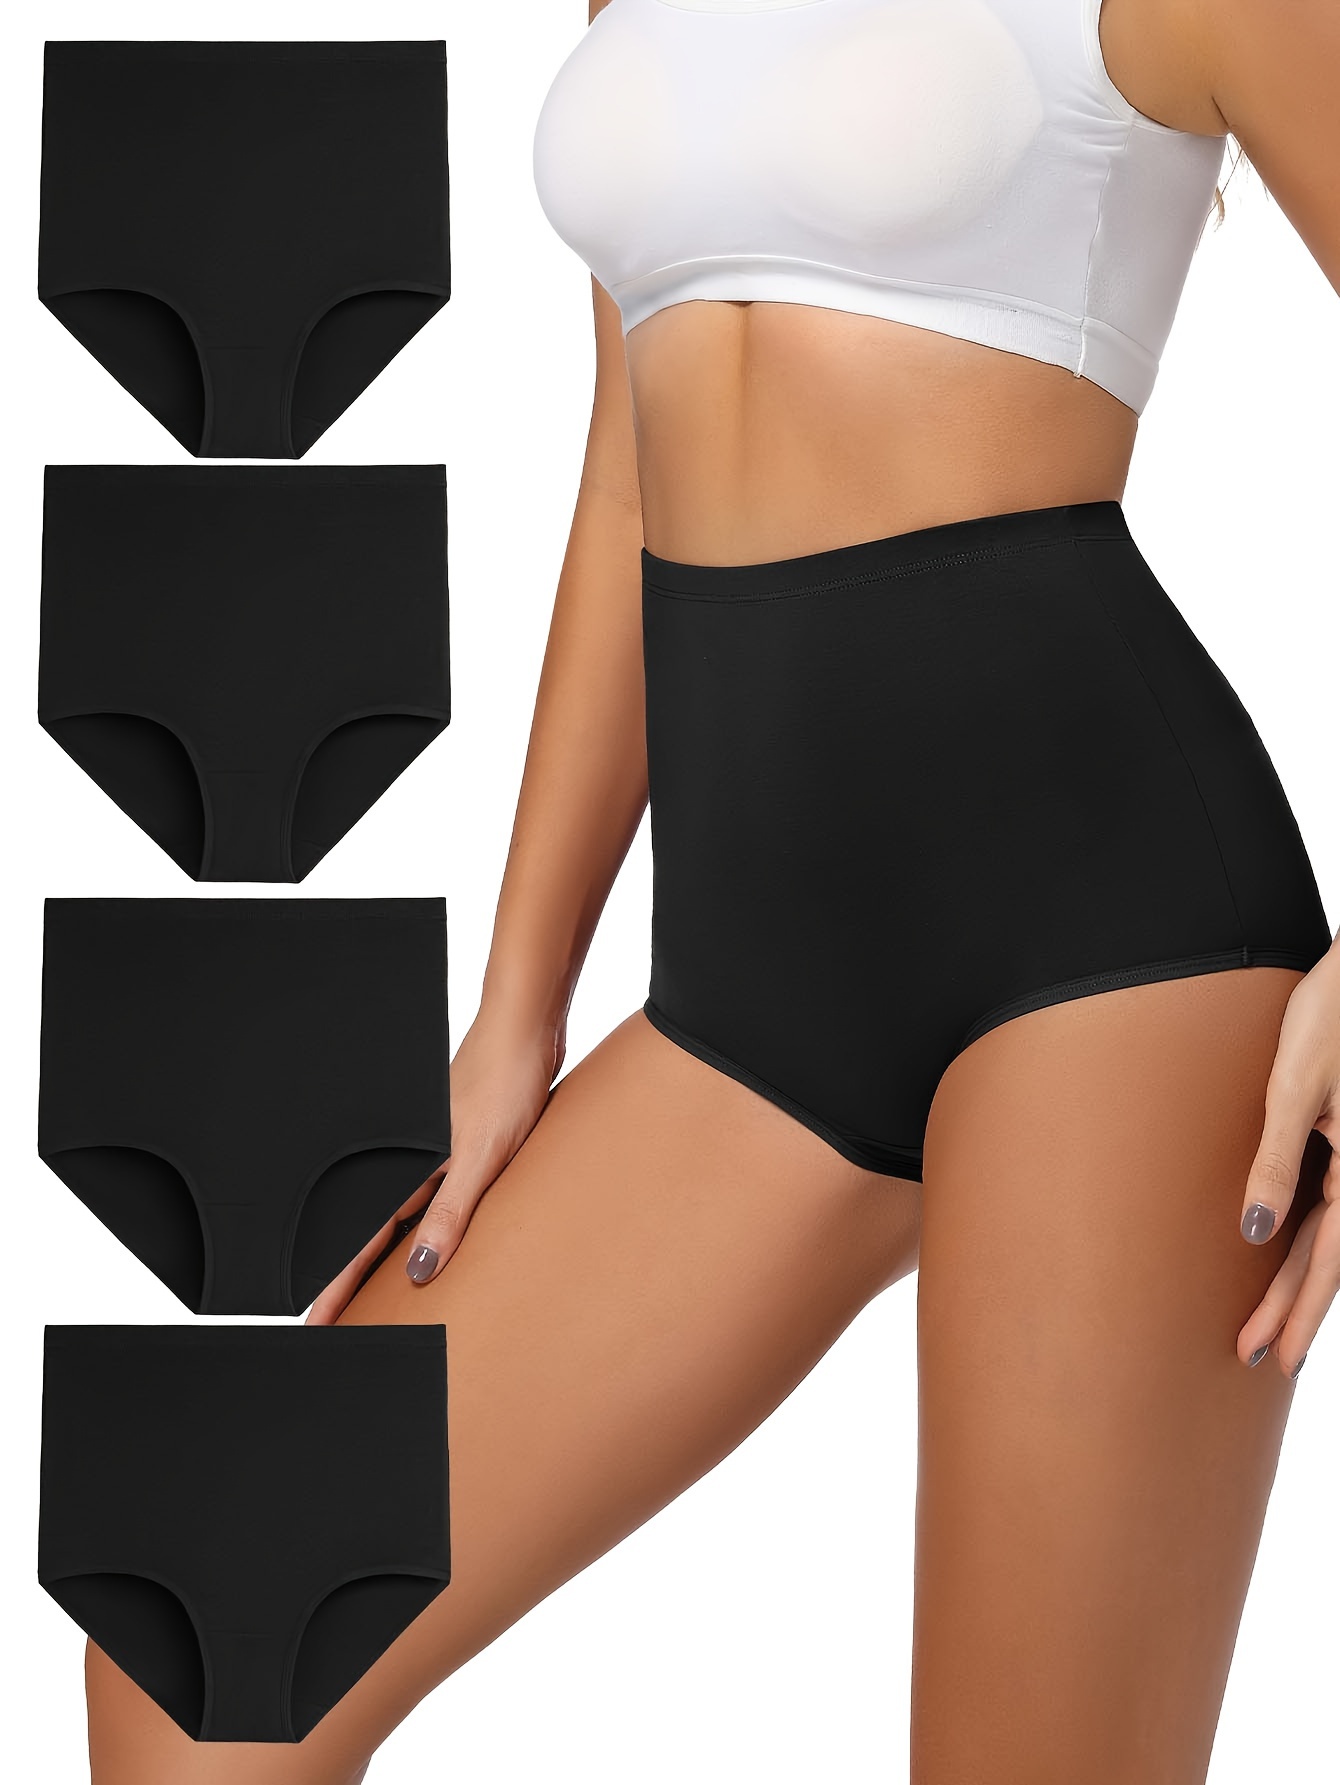 Women's Underwear High Waist Panties Large Size - Seamless High